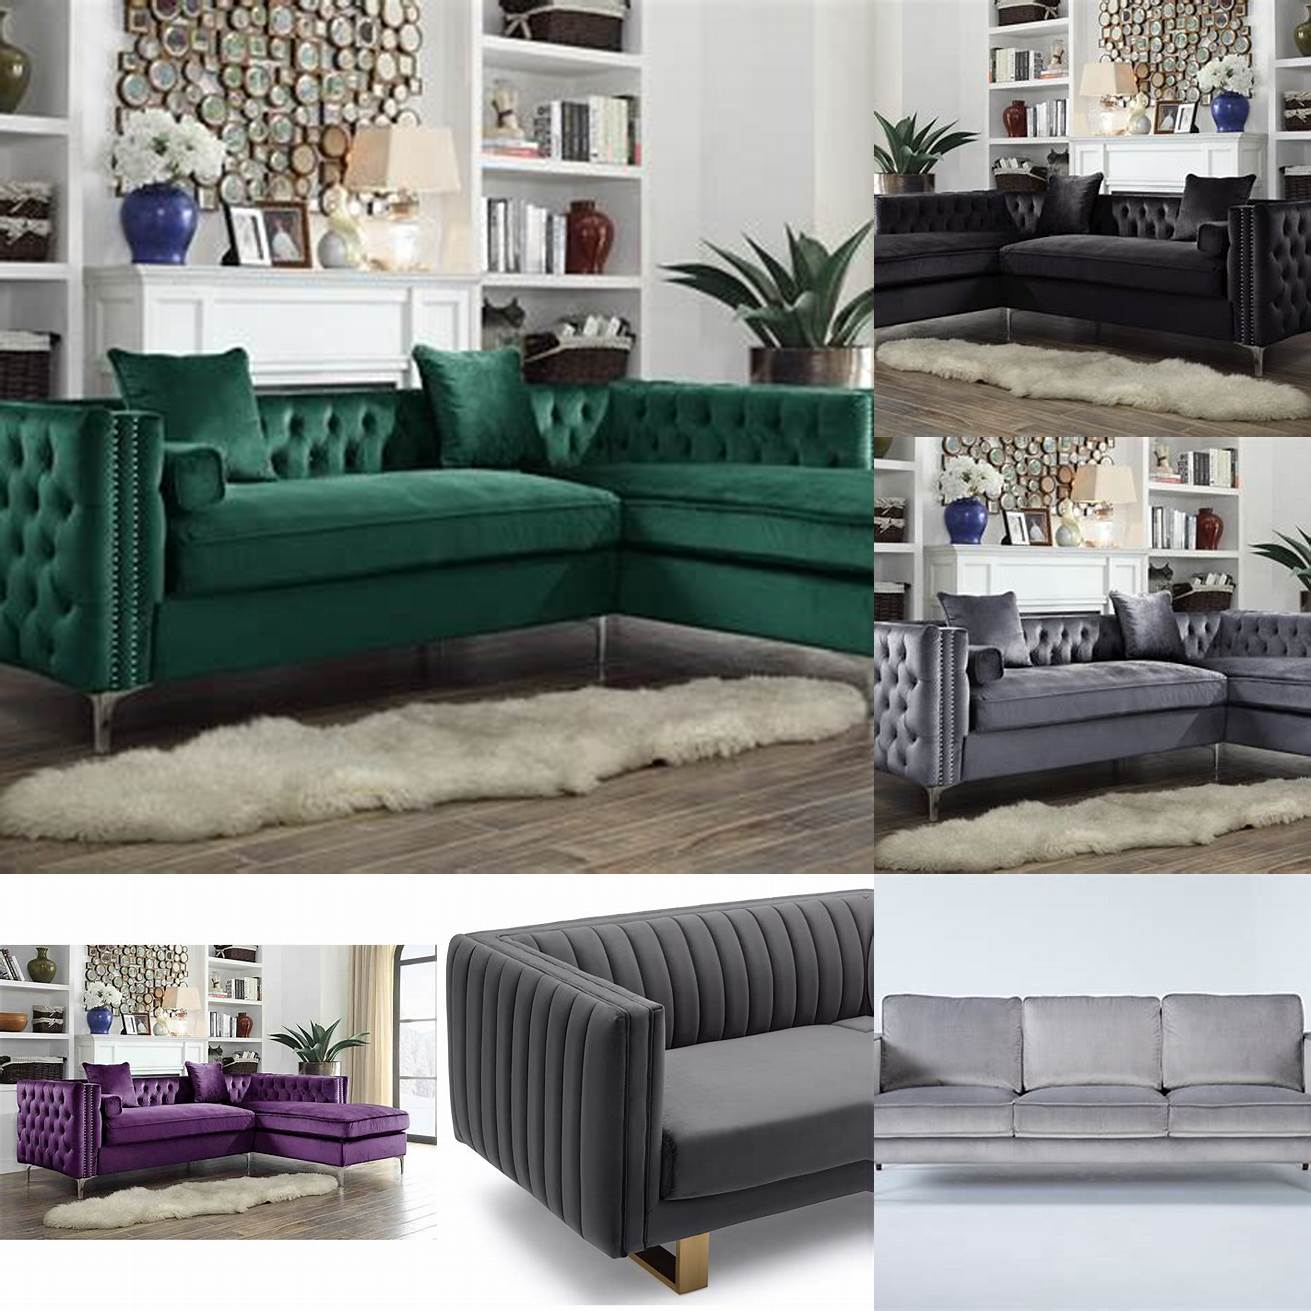 Velvet sofa with metallic legs